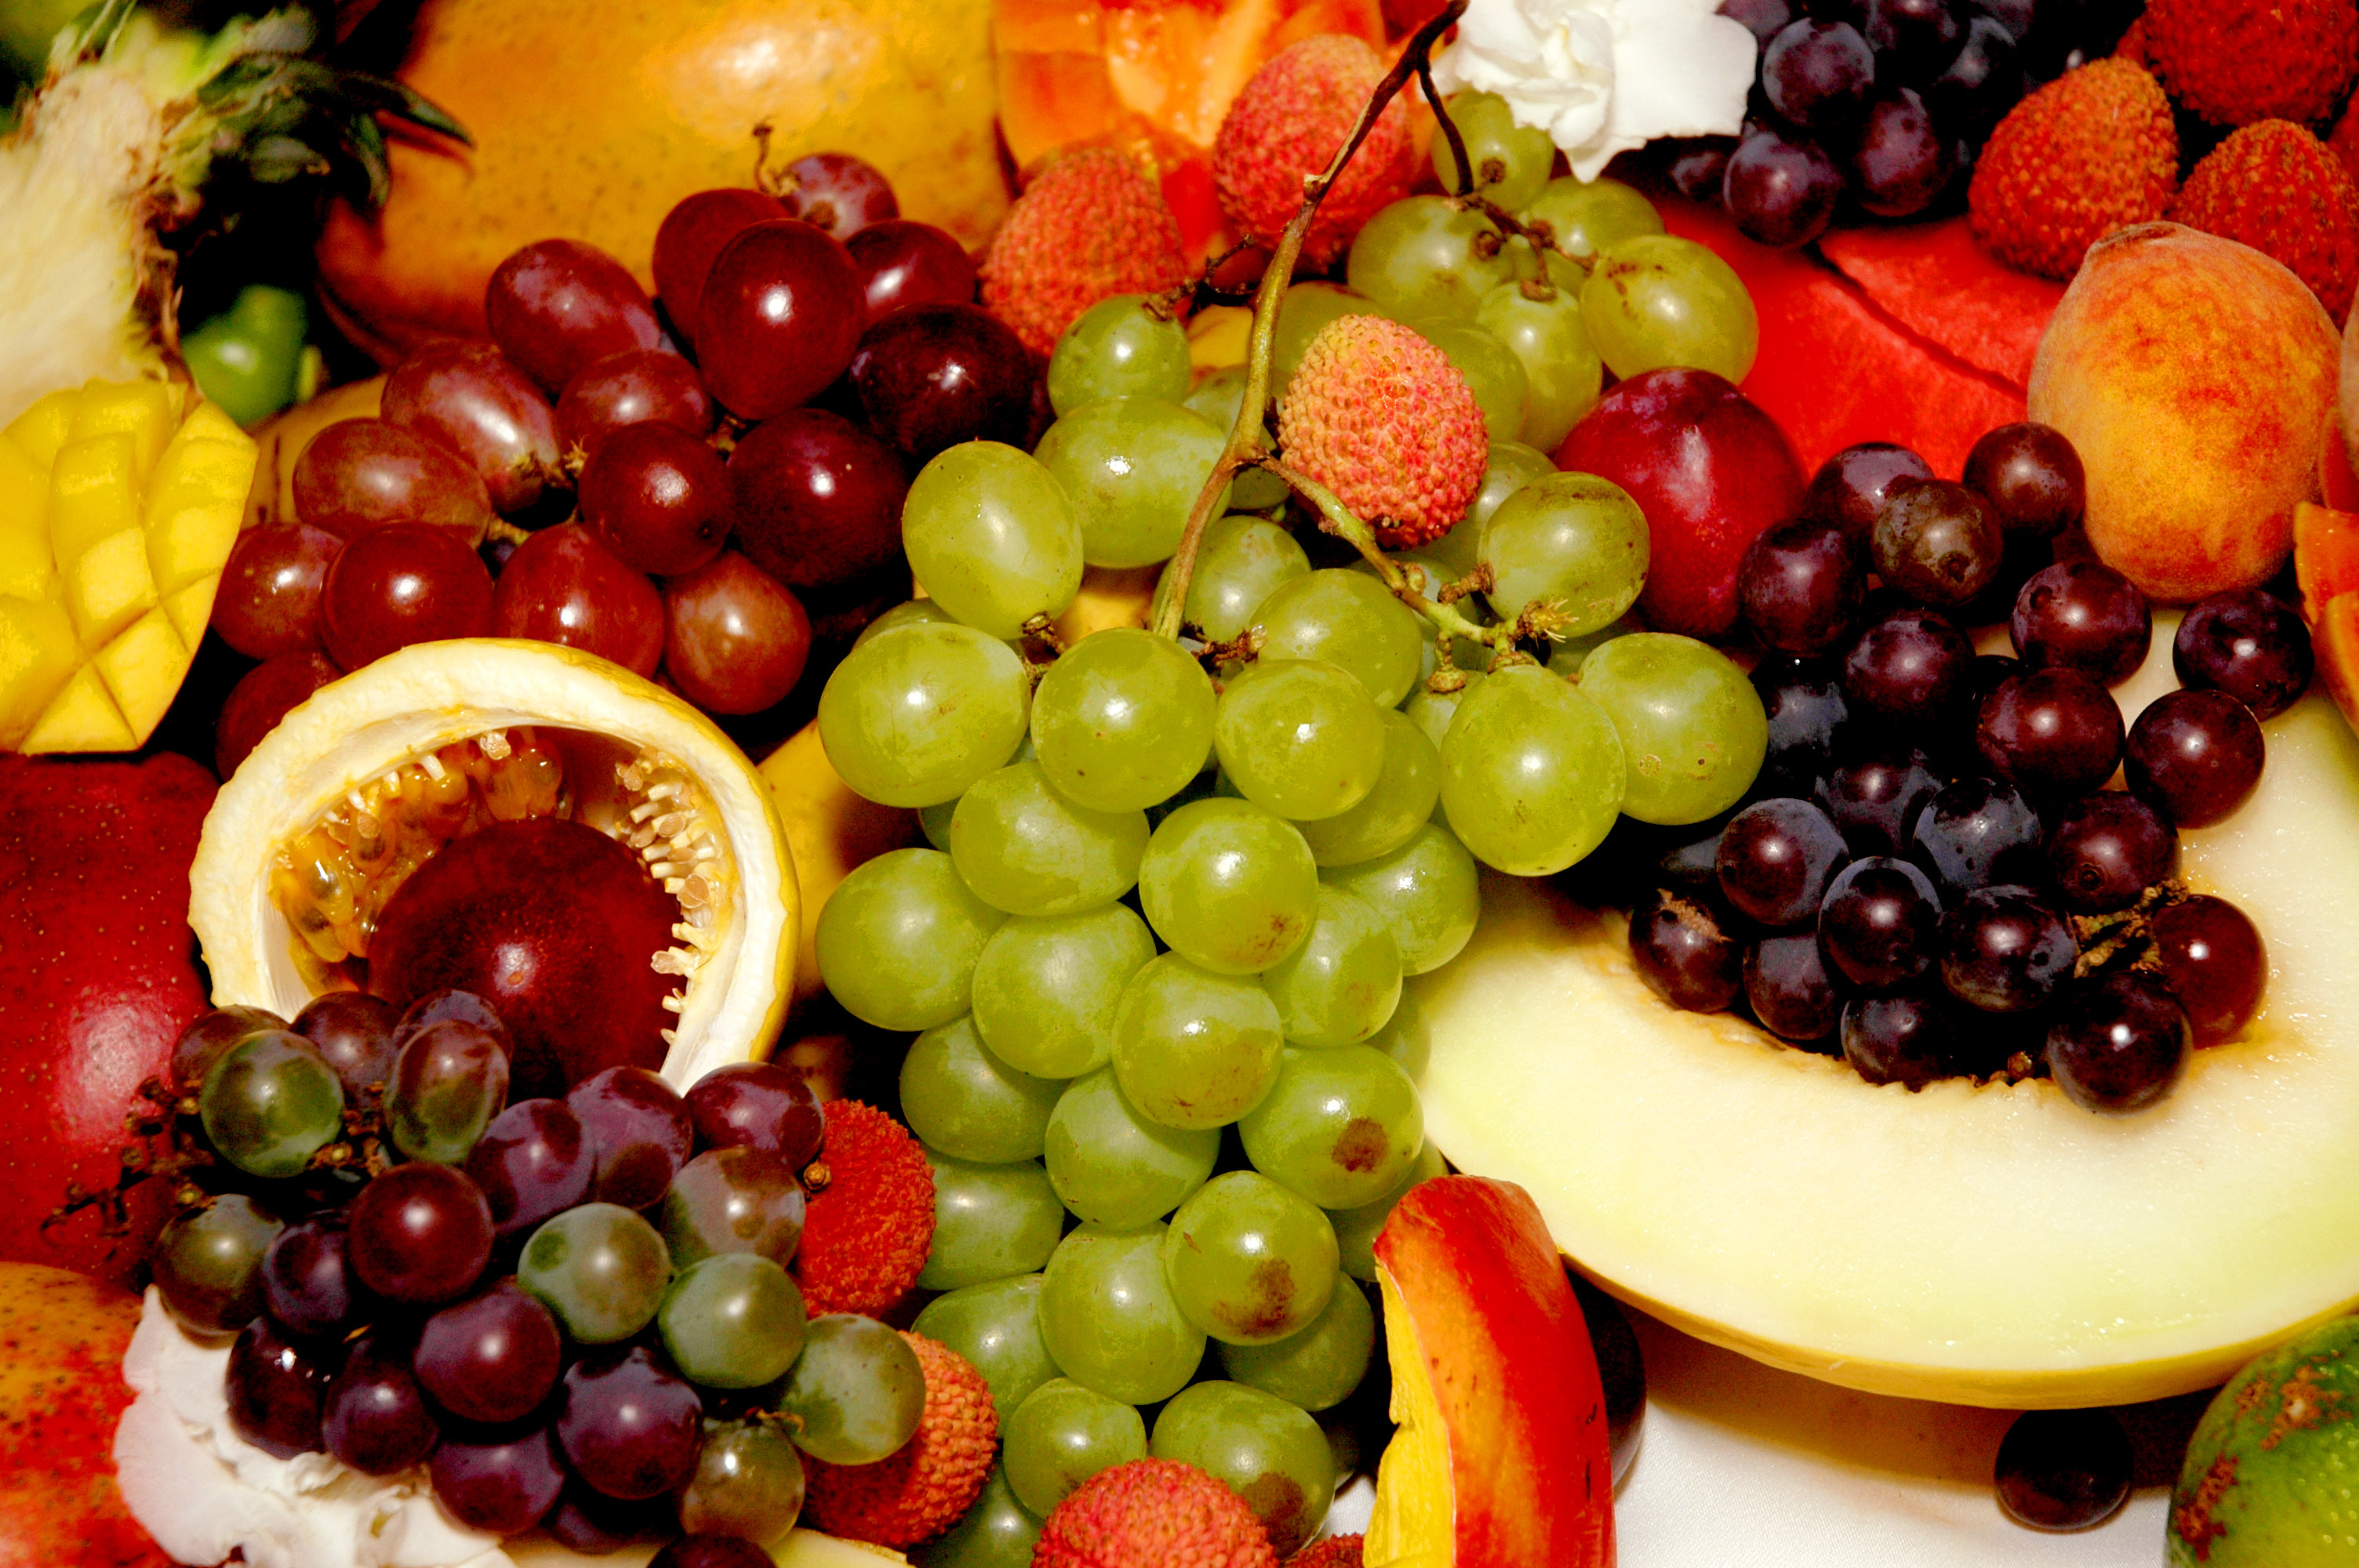 Фруктоза в природе. Фрукты. Фрукты и ягоды богаты. — Фруктовый фруктоза … (Фрукт).. Глюкоза в фруктах.